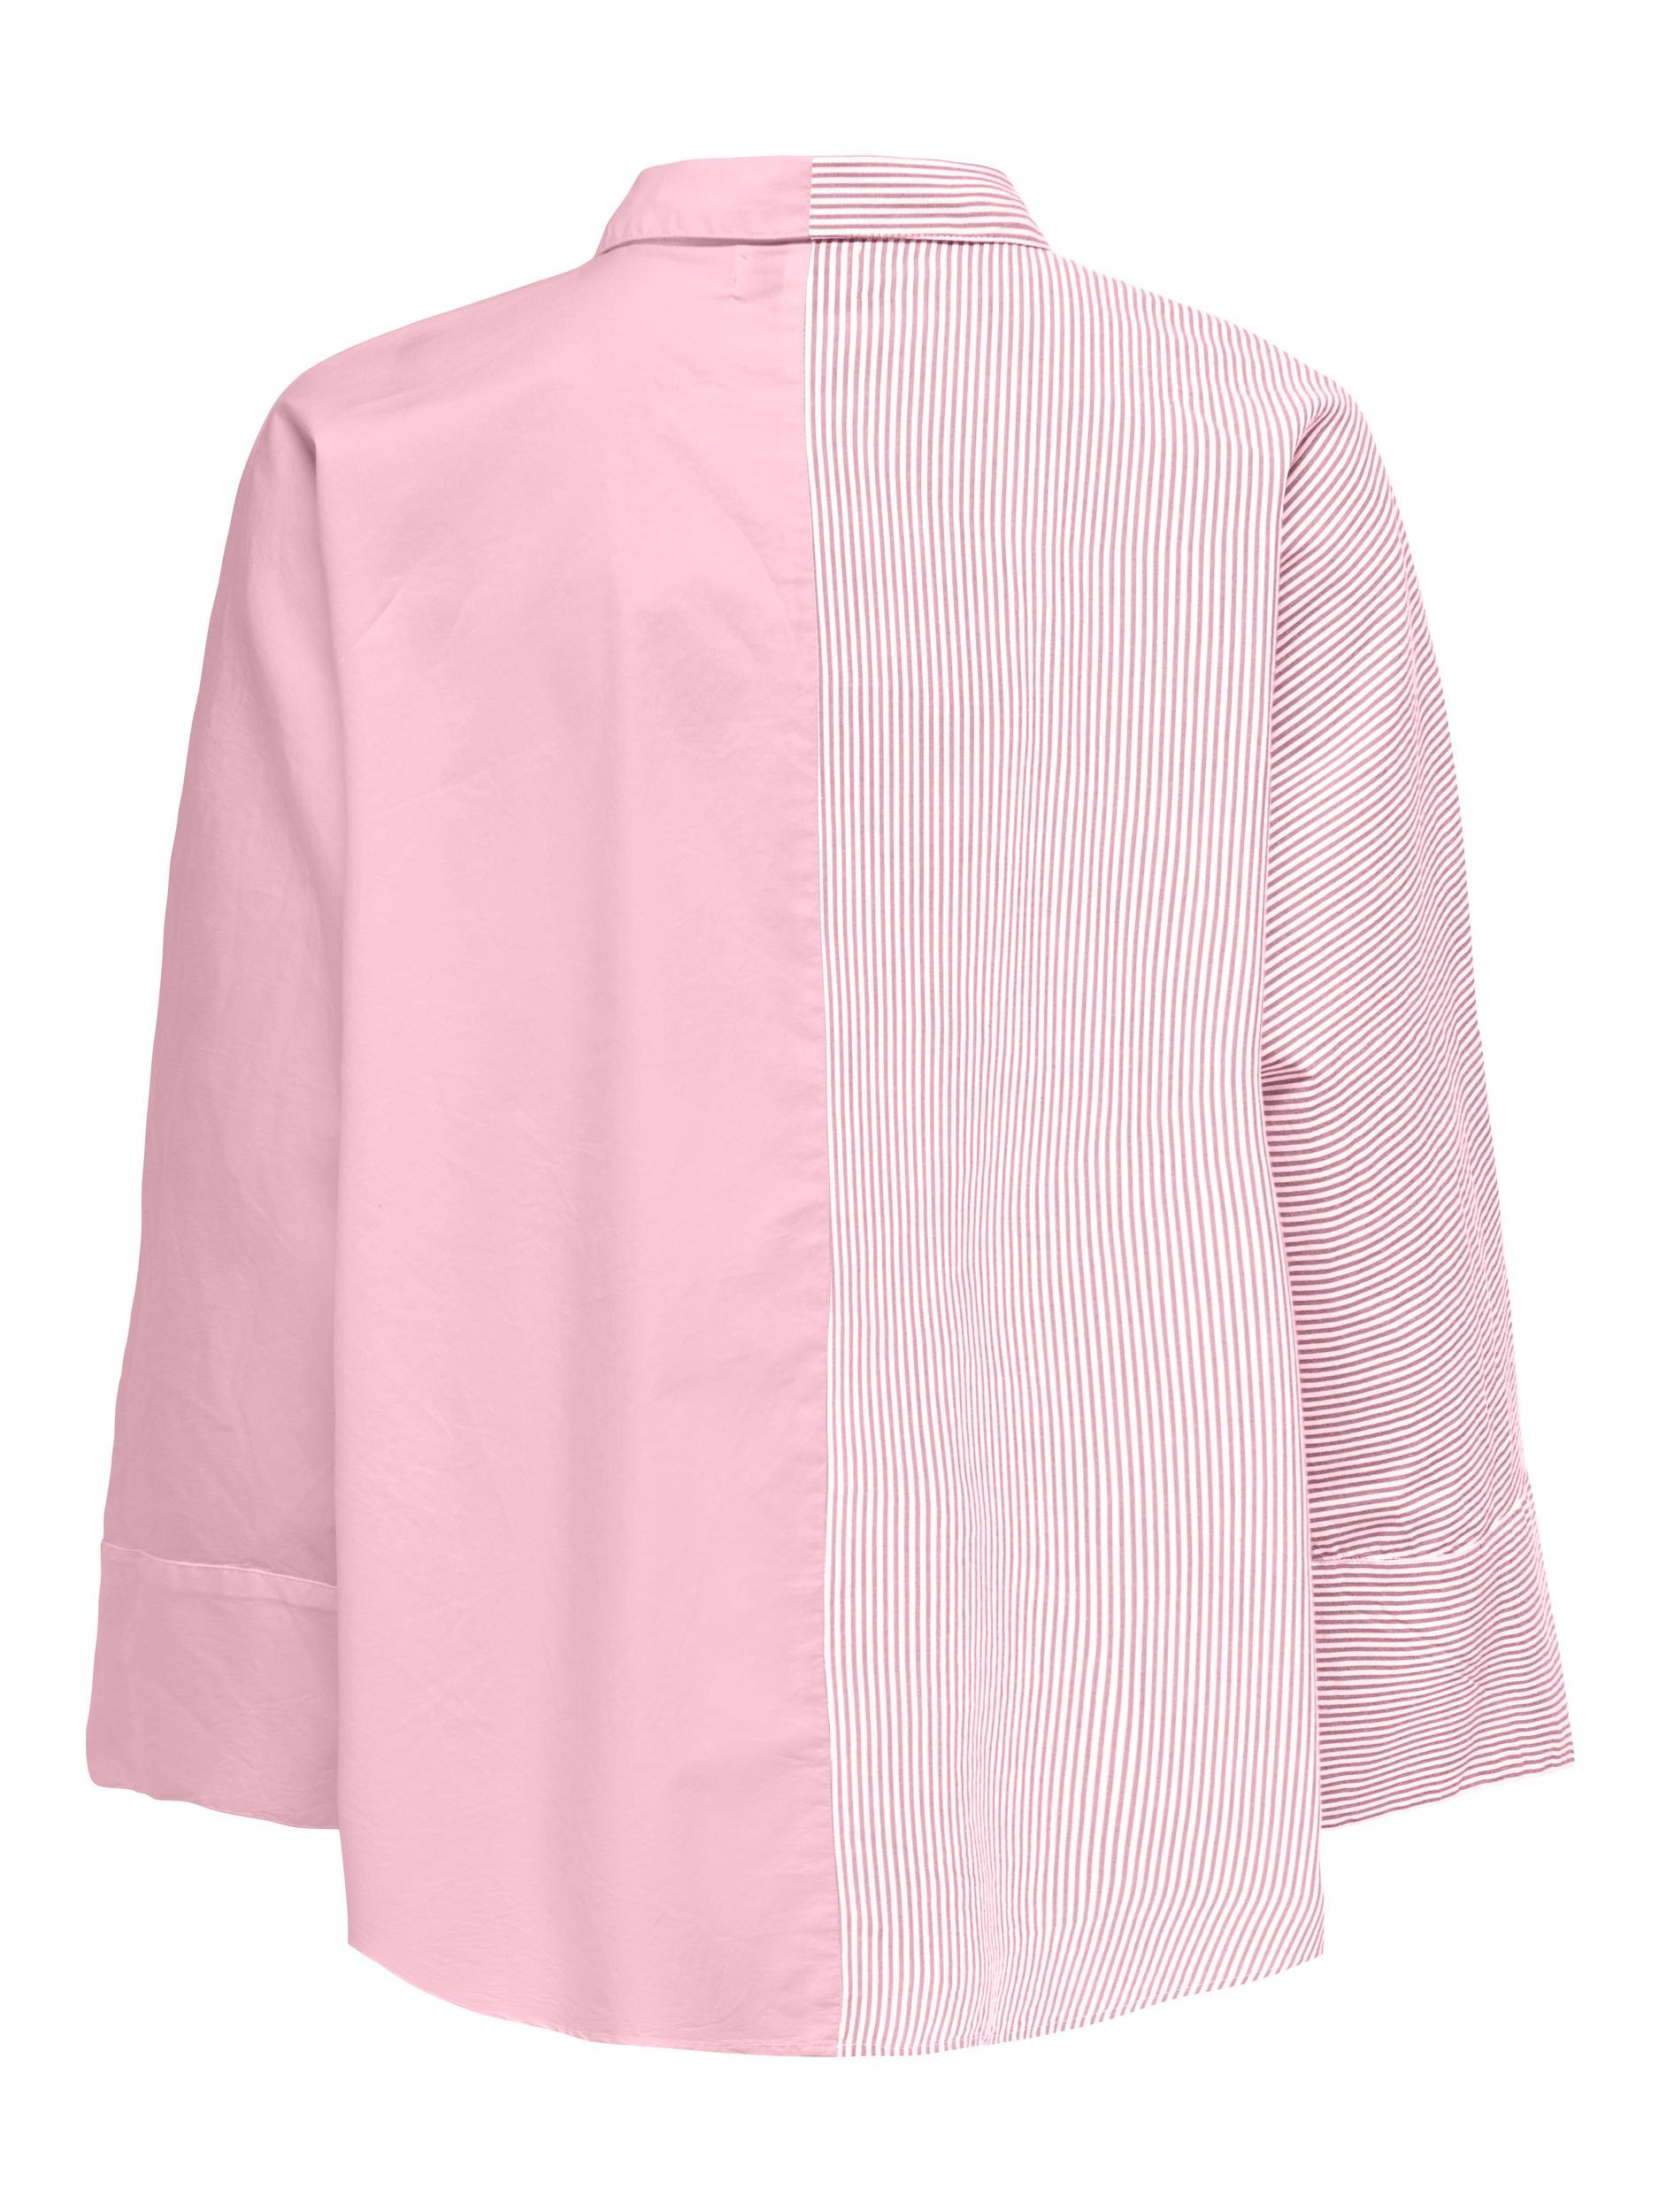 Camicia bicolore, Rosa, large